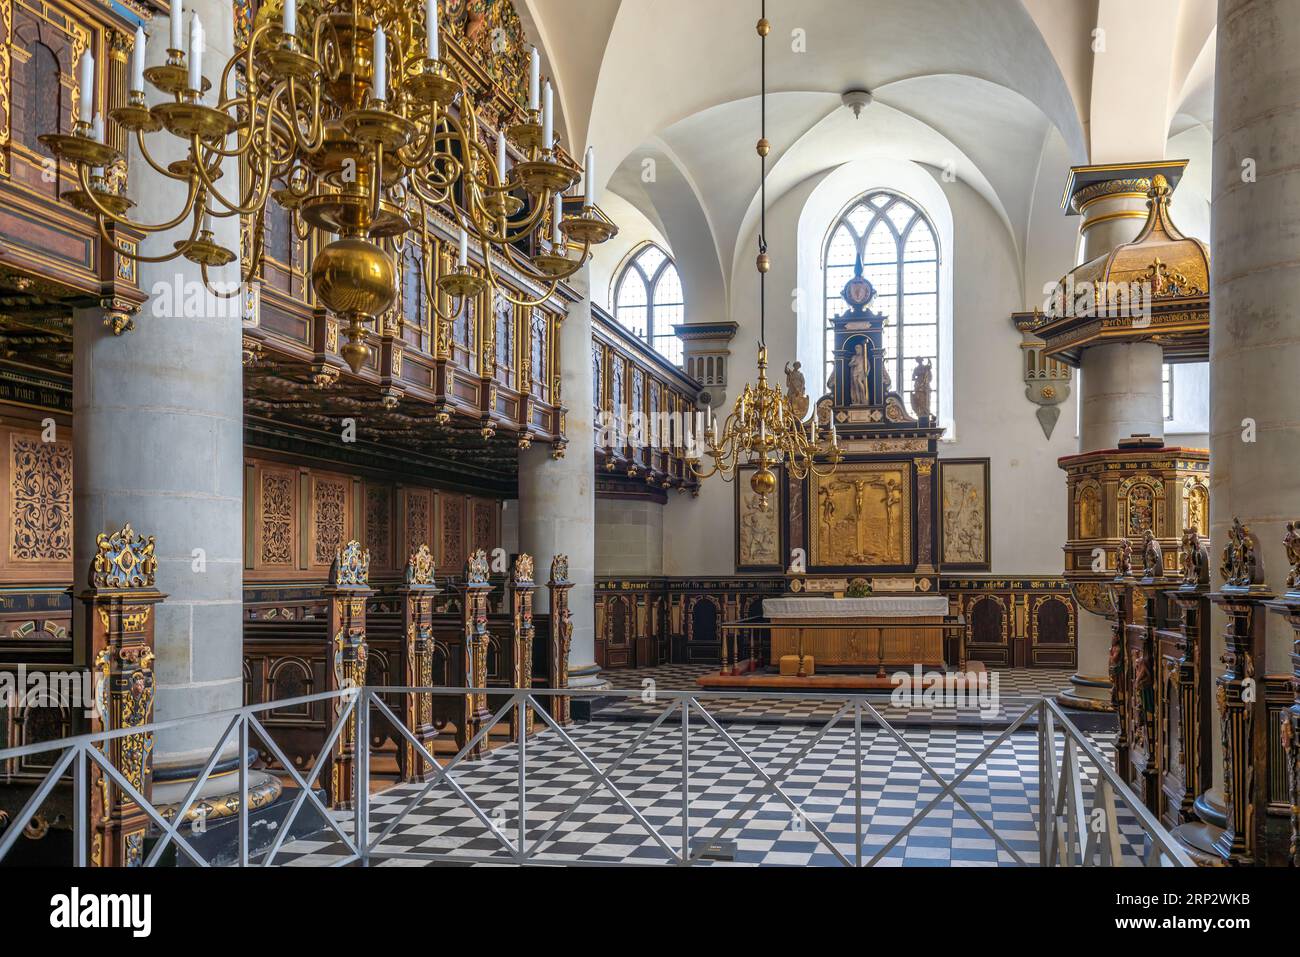 Interno della cappella del castello di Kronborg - Helsingor, Danimarca Foto Stock